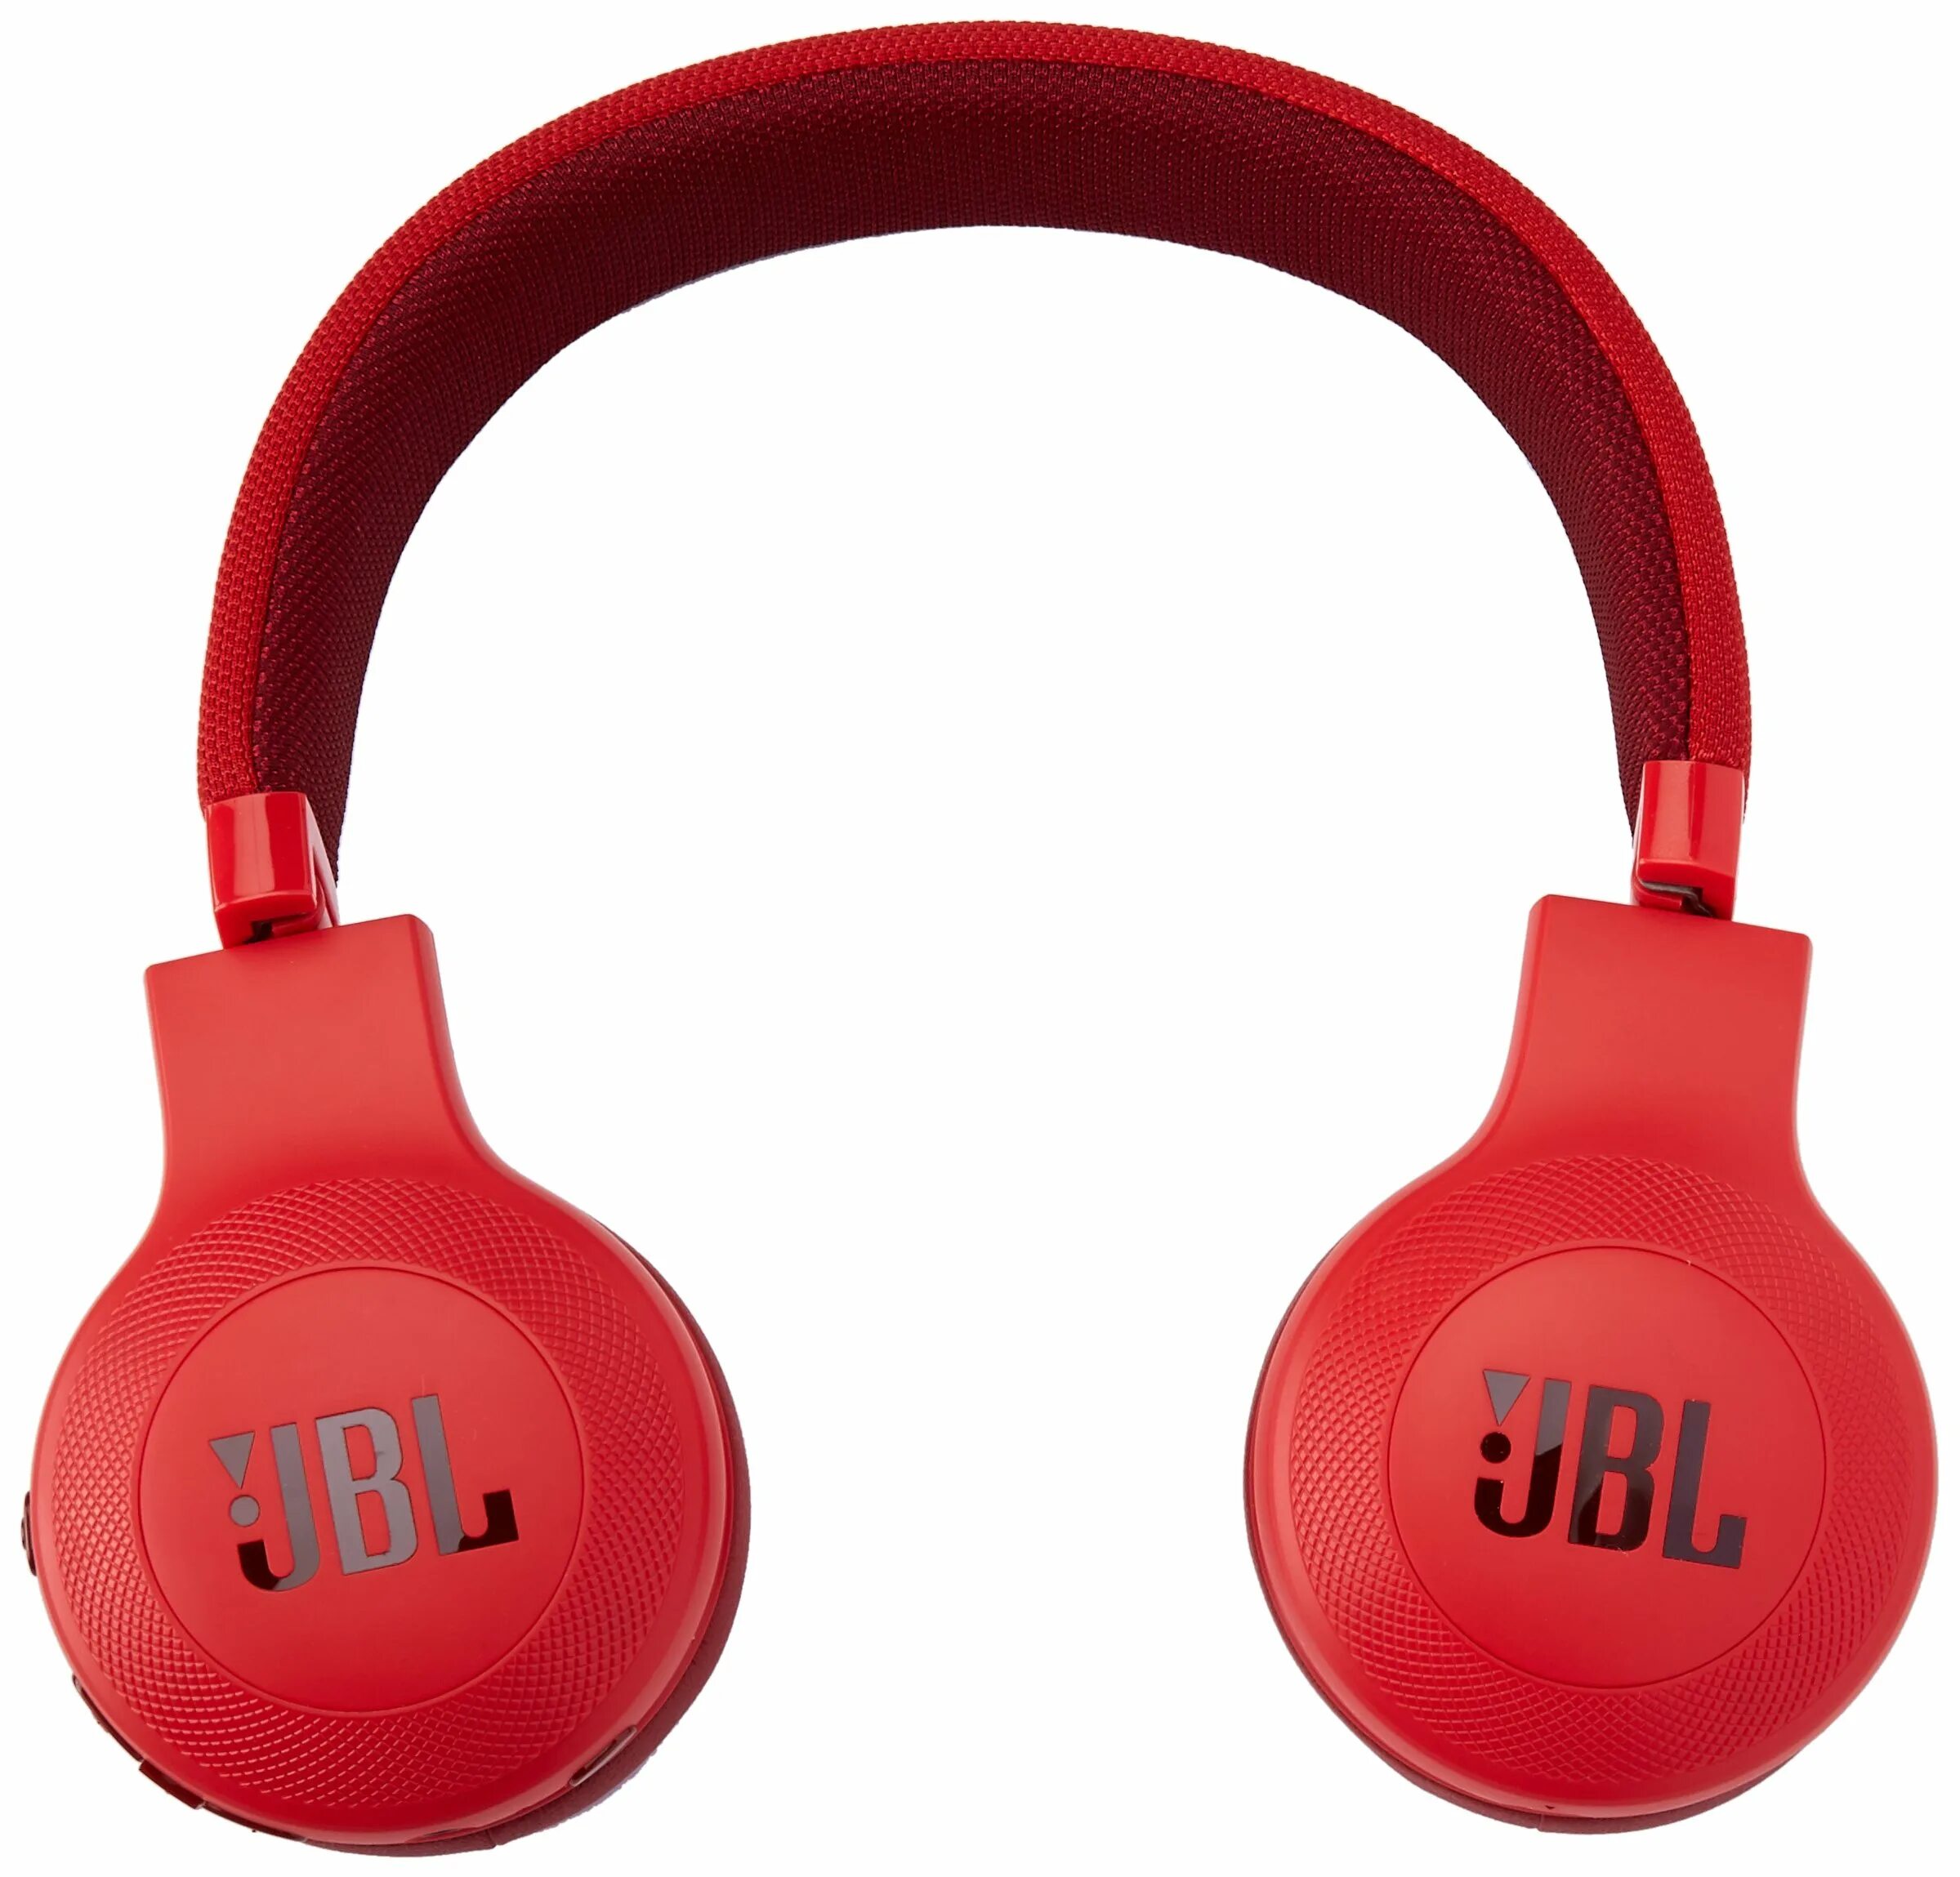 Наушники jbl купить в москве. Беспроводные наушники JBL e45bt. JBL e45bt Red. Наушники Bluetooth JBL e45bt Black (jble45btblk). JBL e45bt Red Warranty.